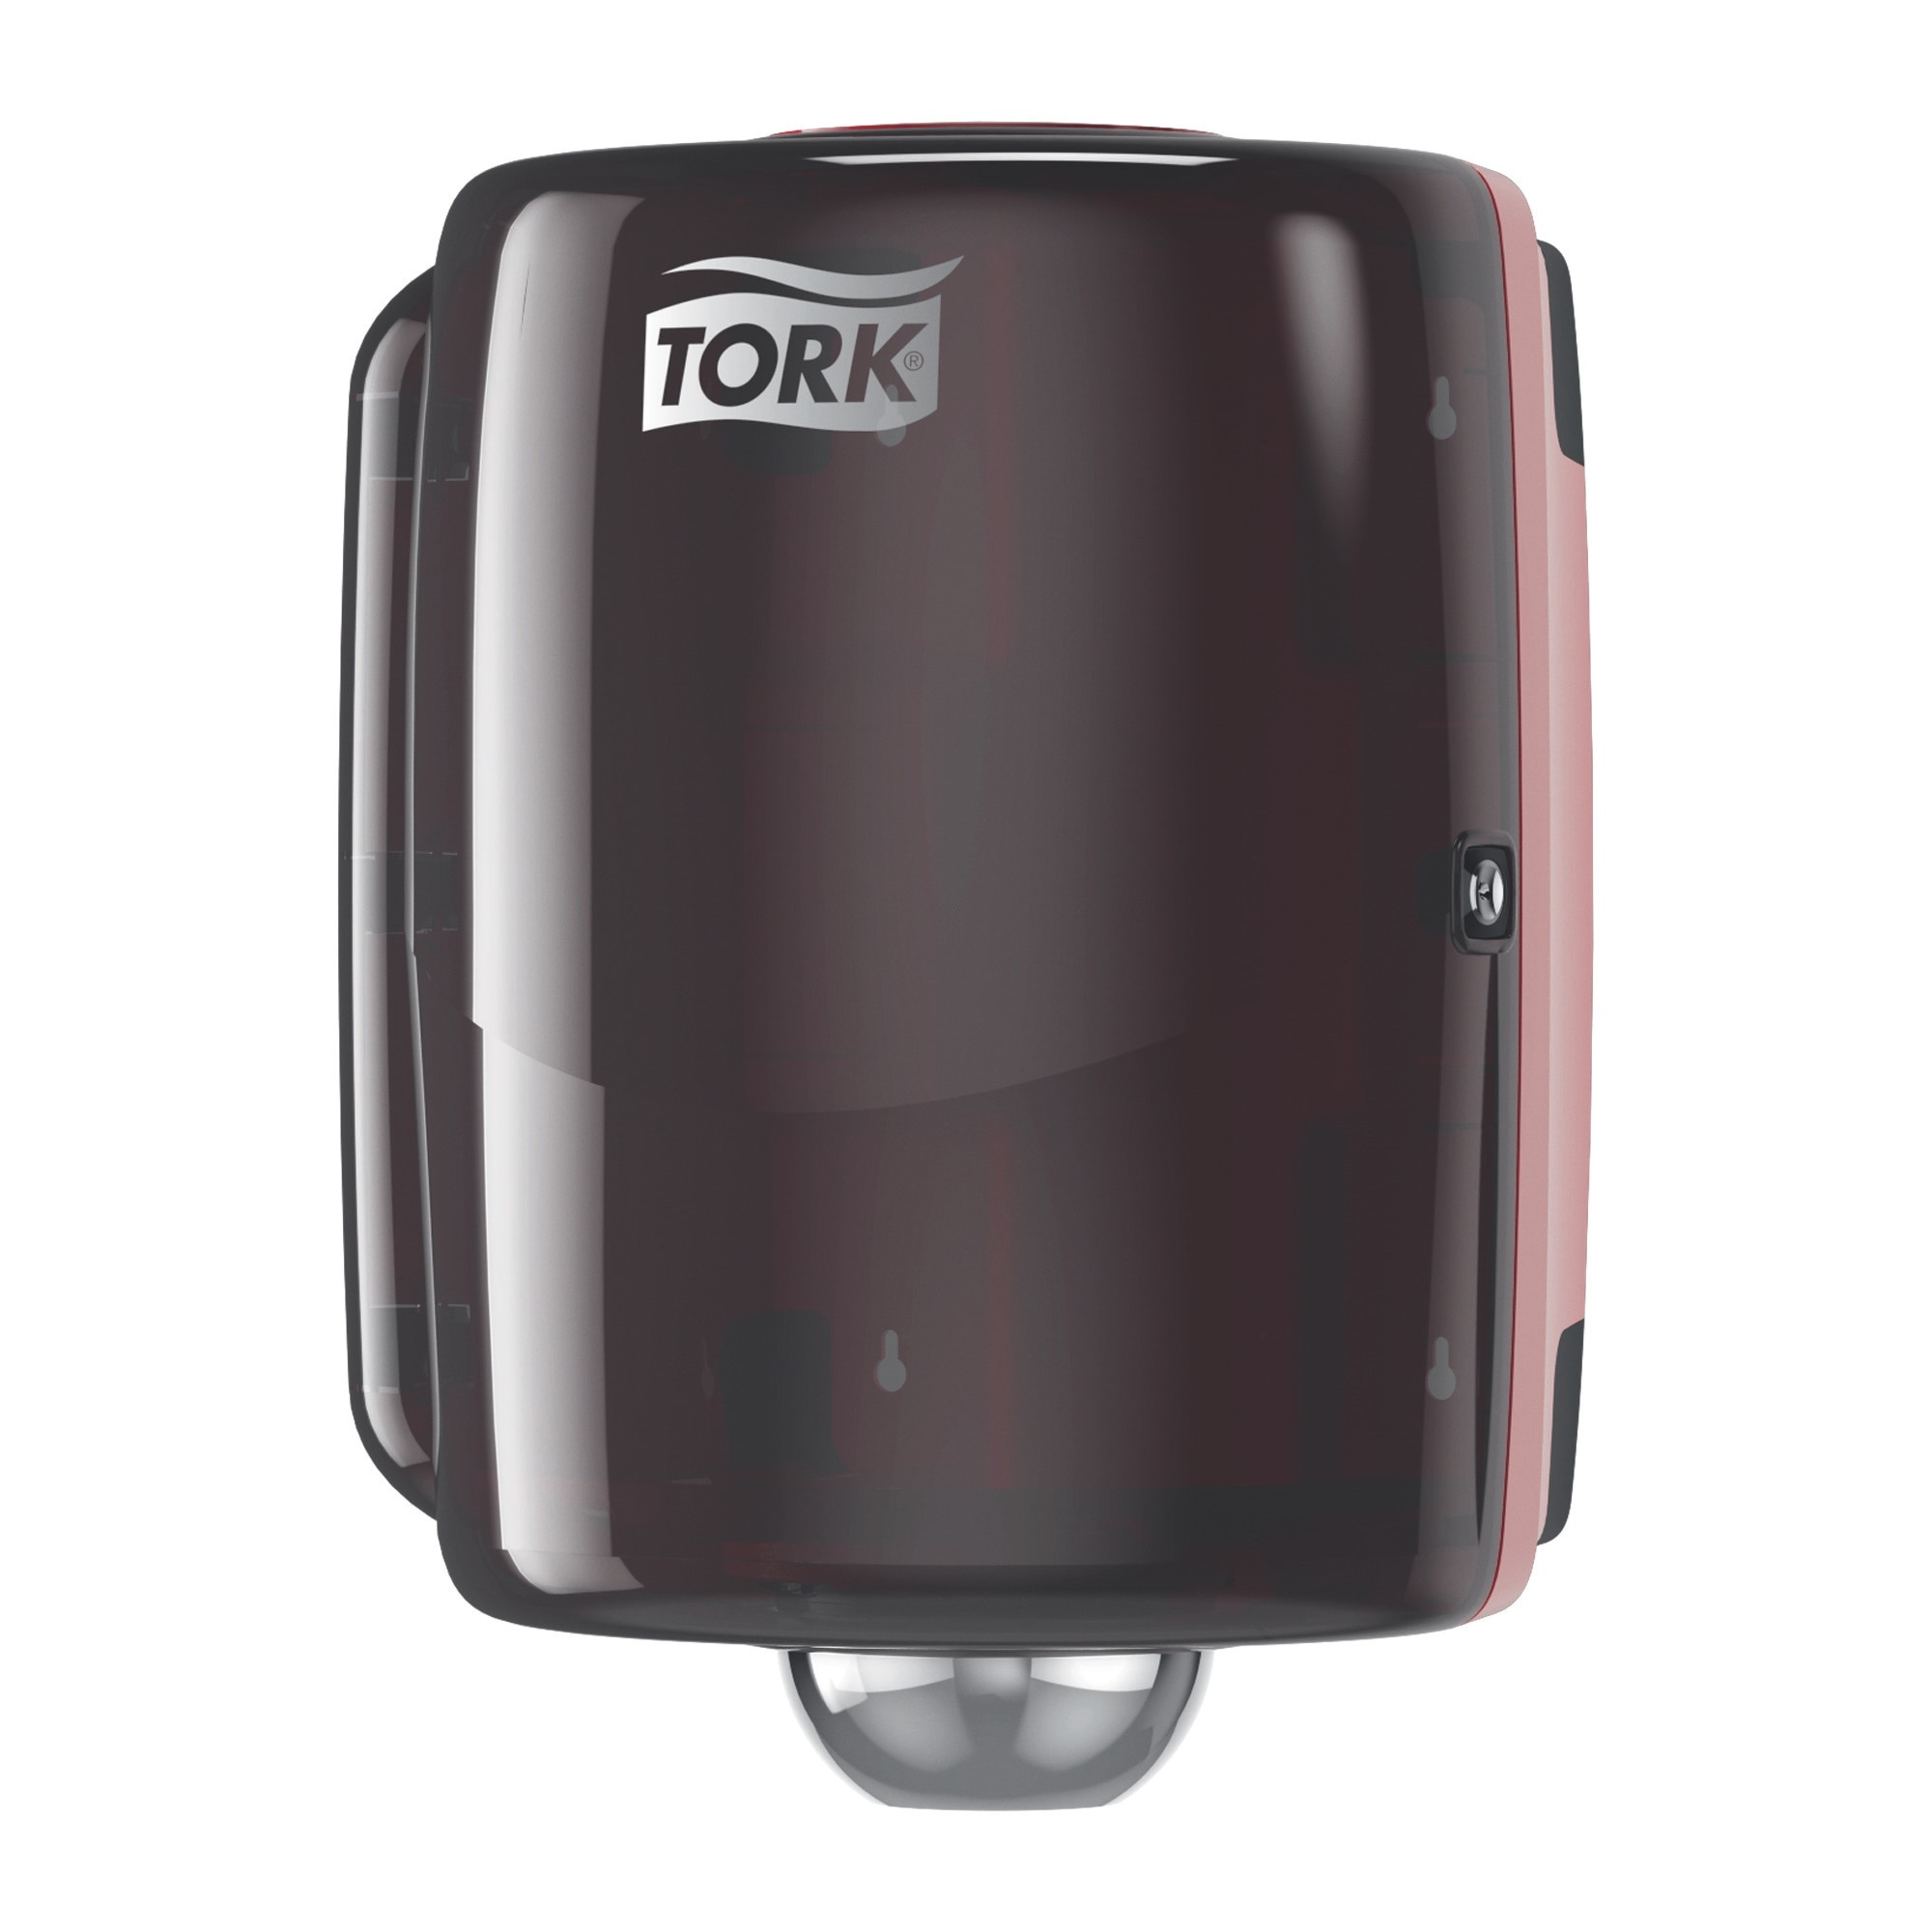 Billede af TORK Dispenser W2/M4 Maxi Sort/Rød Til Centerrulle (653008)